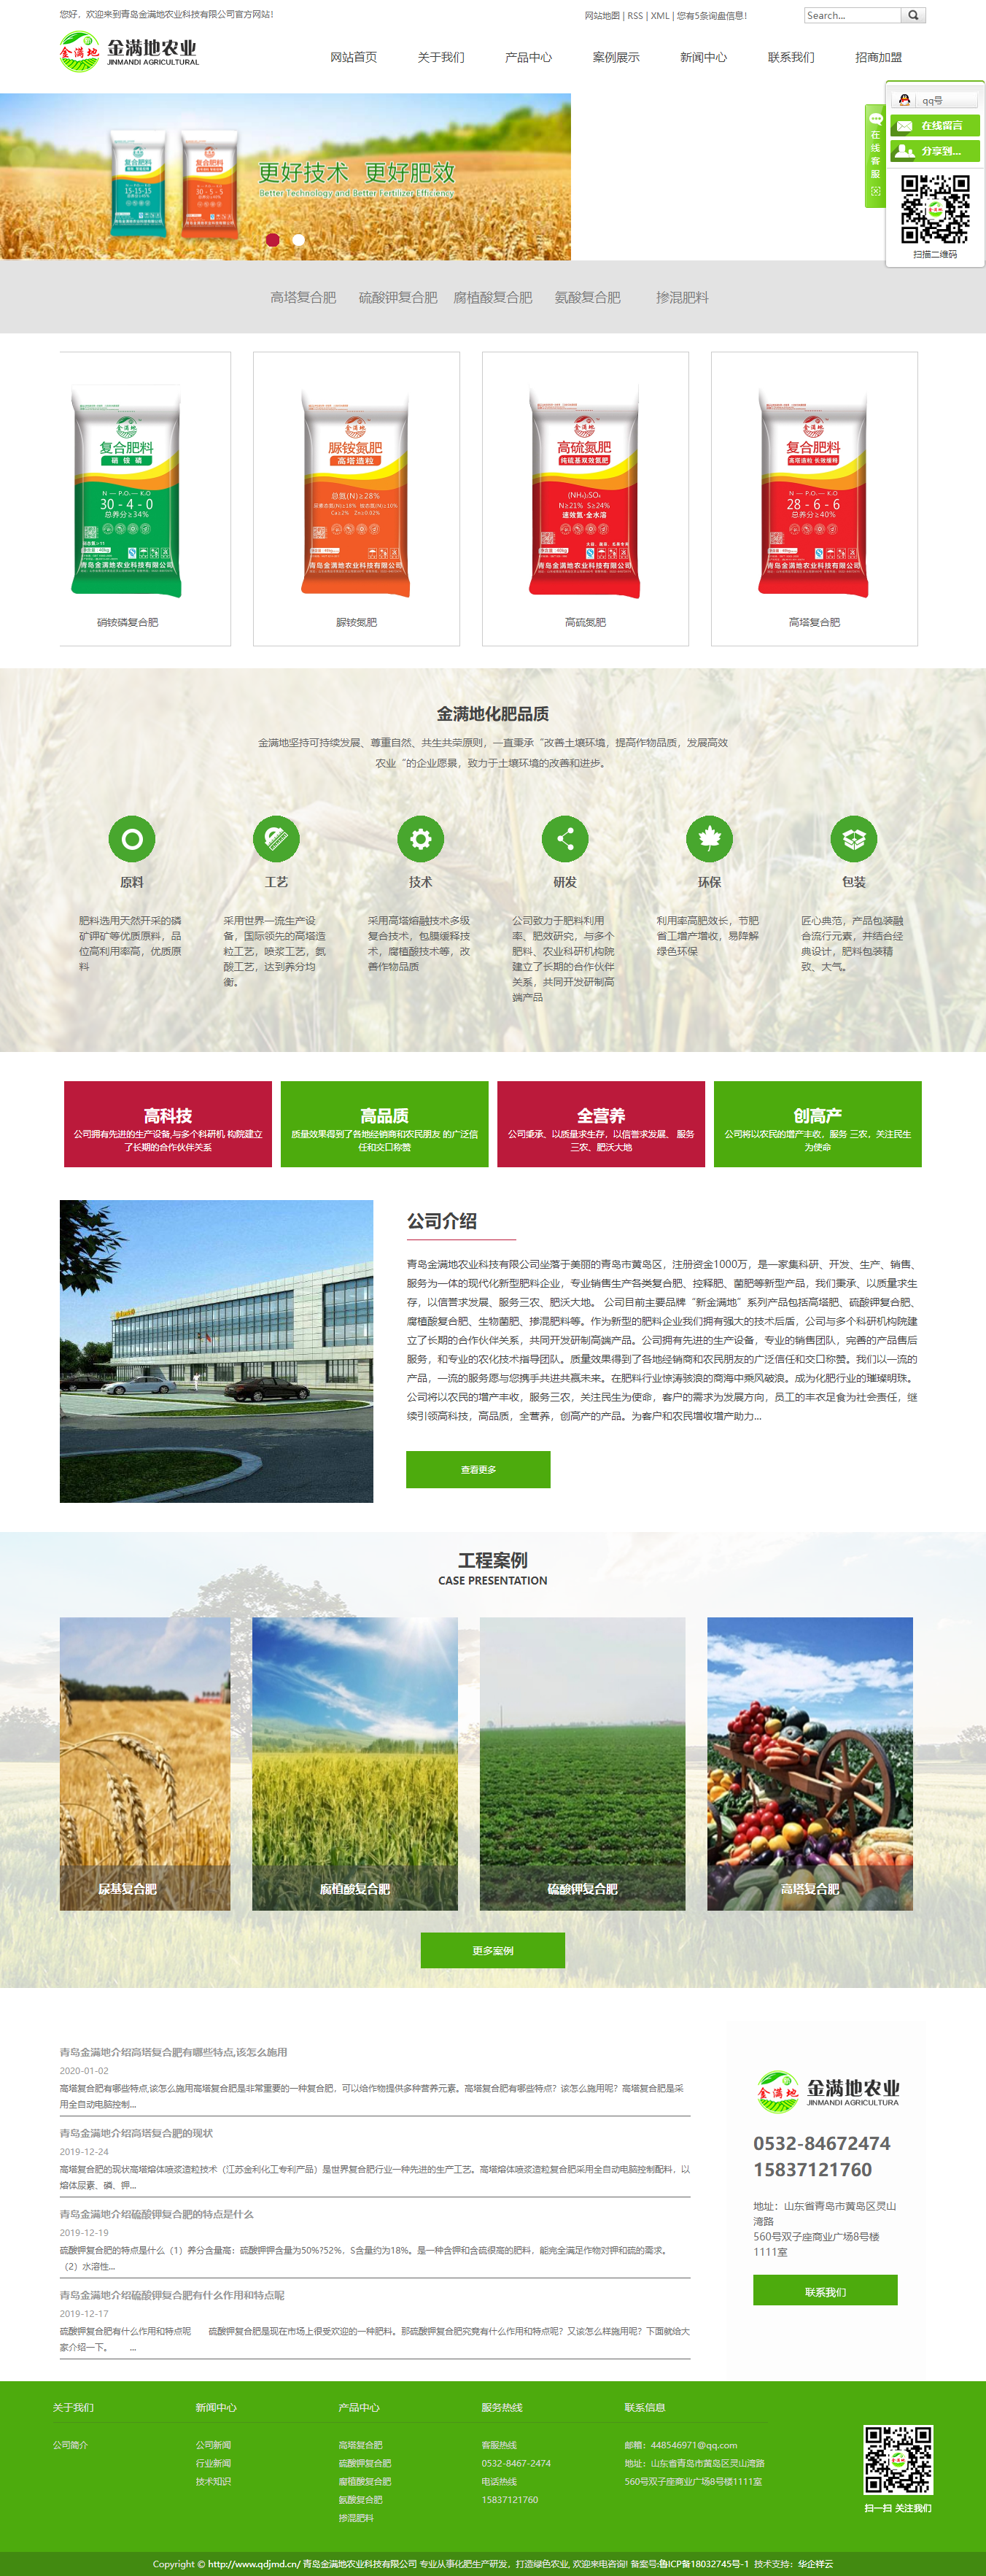 青岛金满地农业科技有限公司网站案例